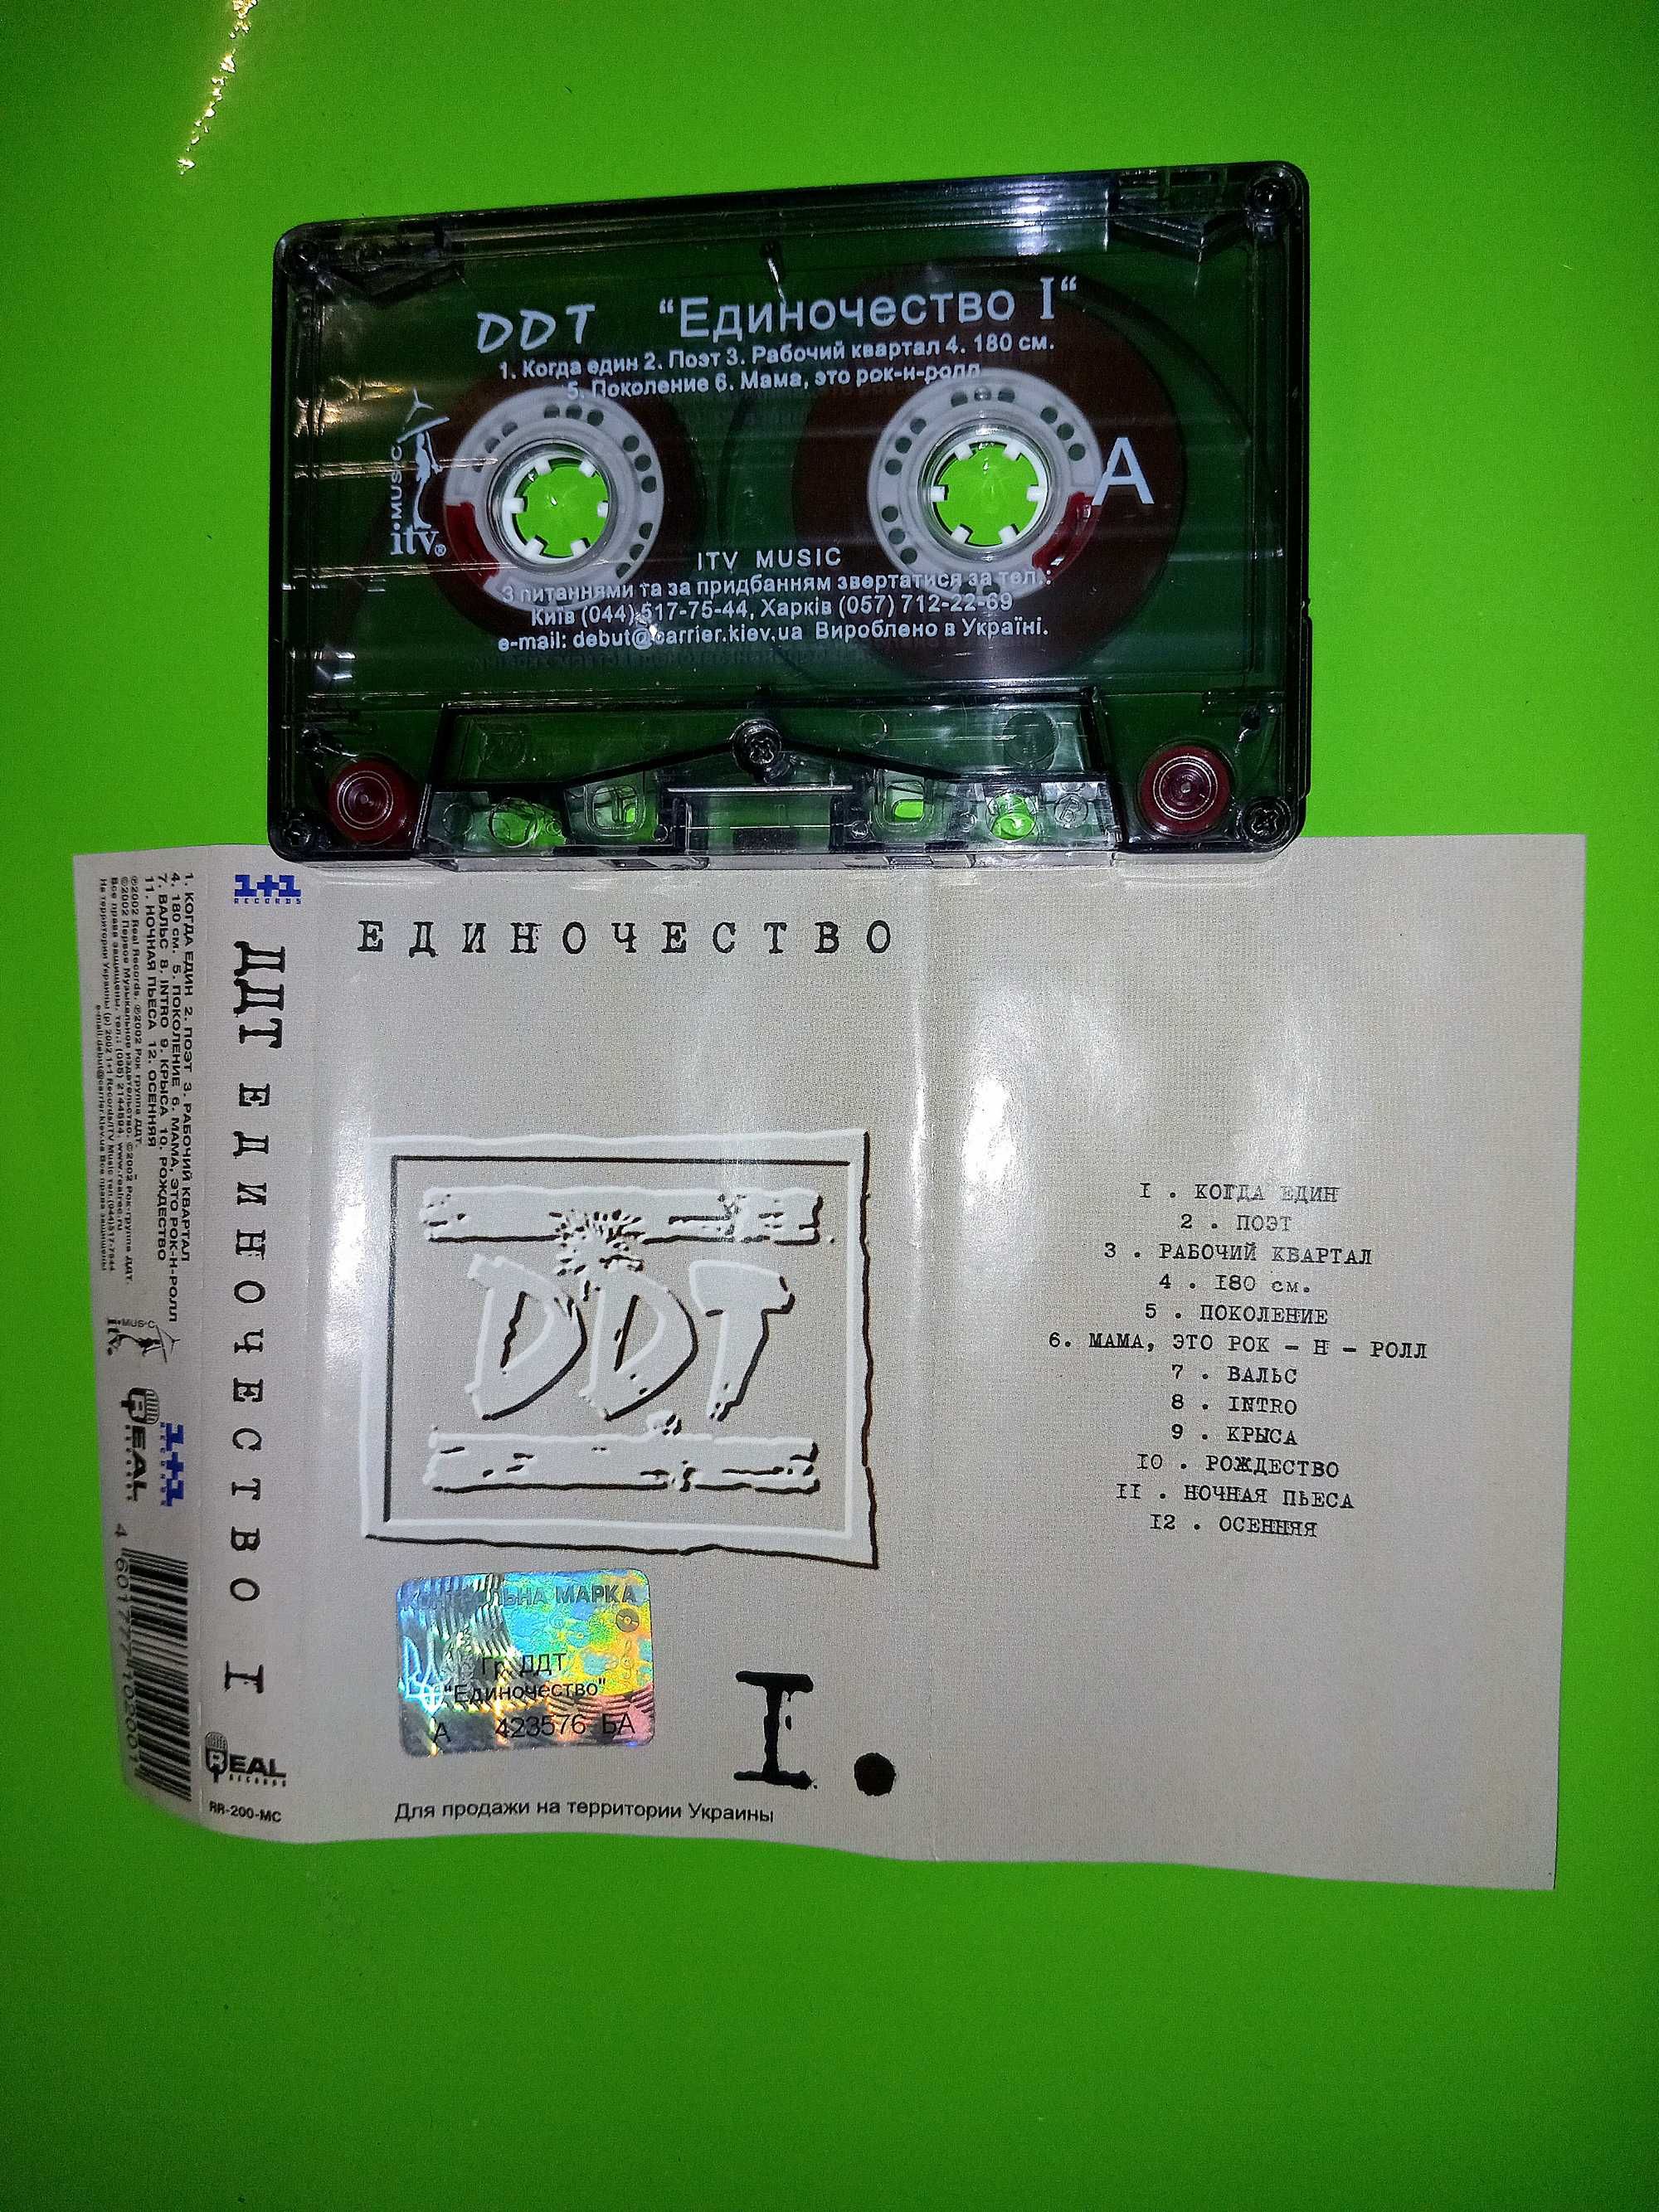 Аудиокассеты «ДДТ» (DDT)